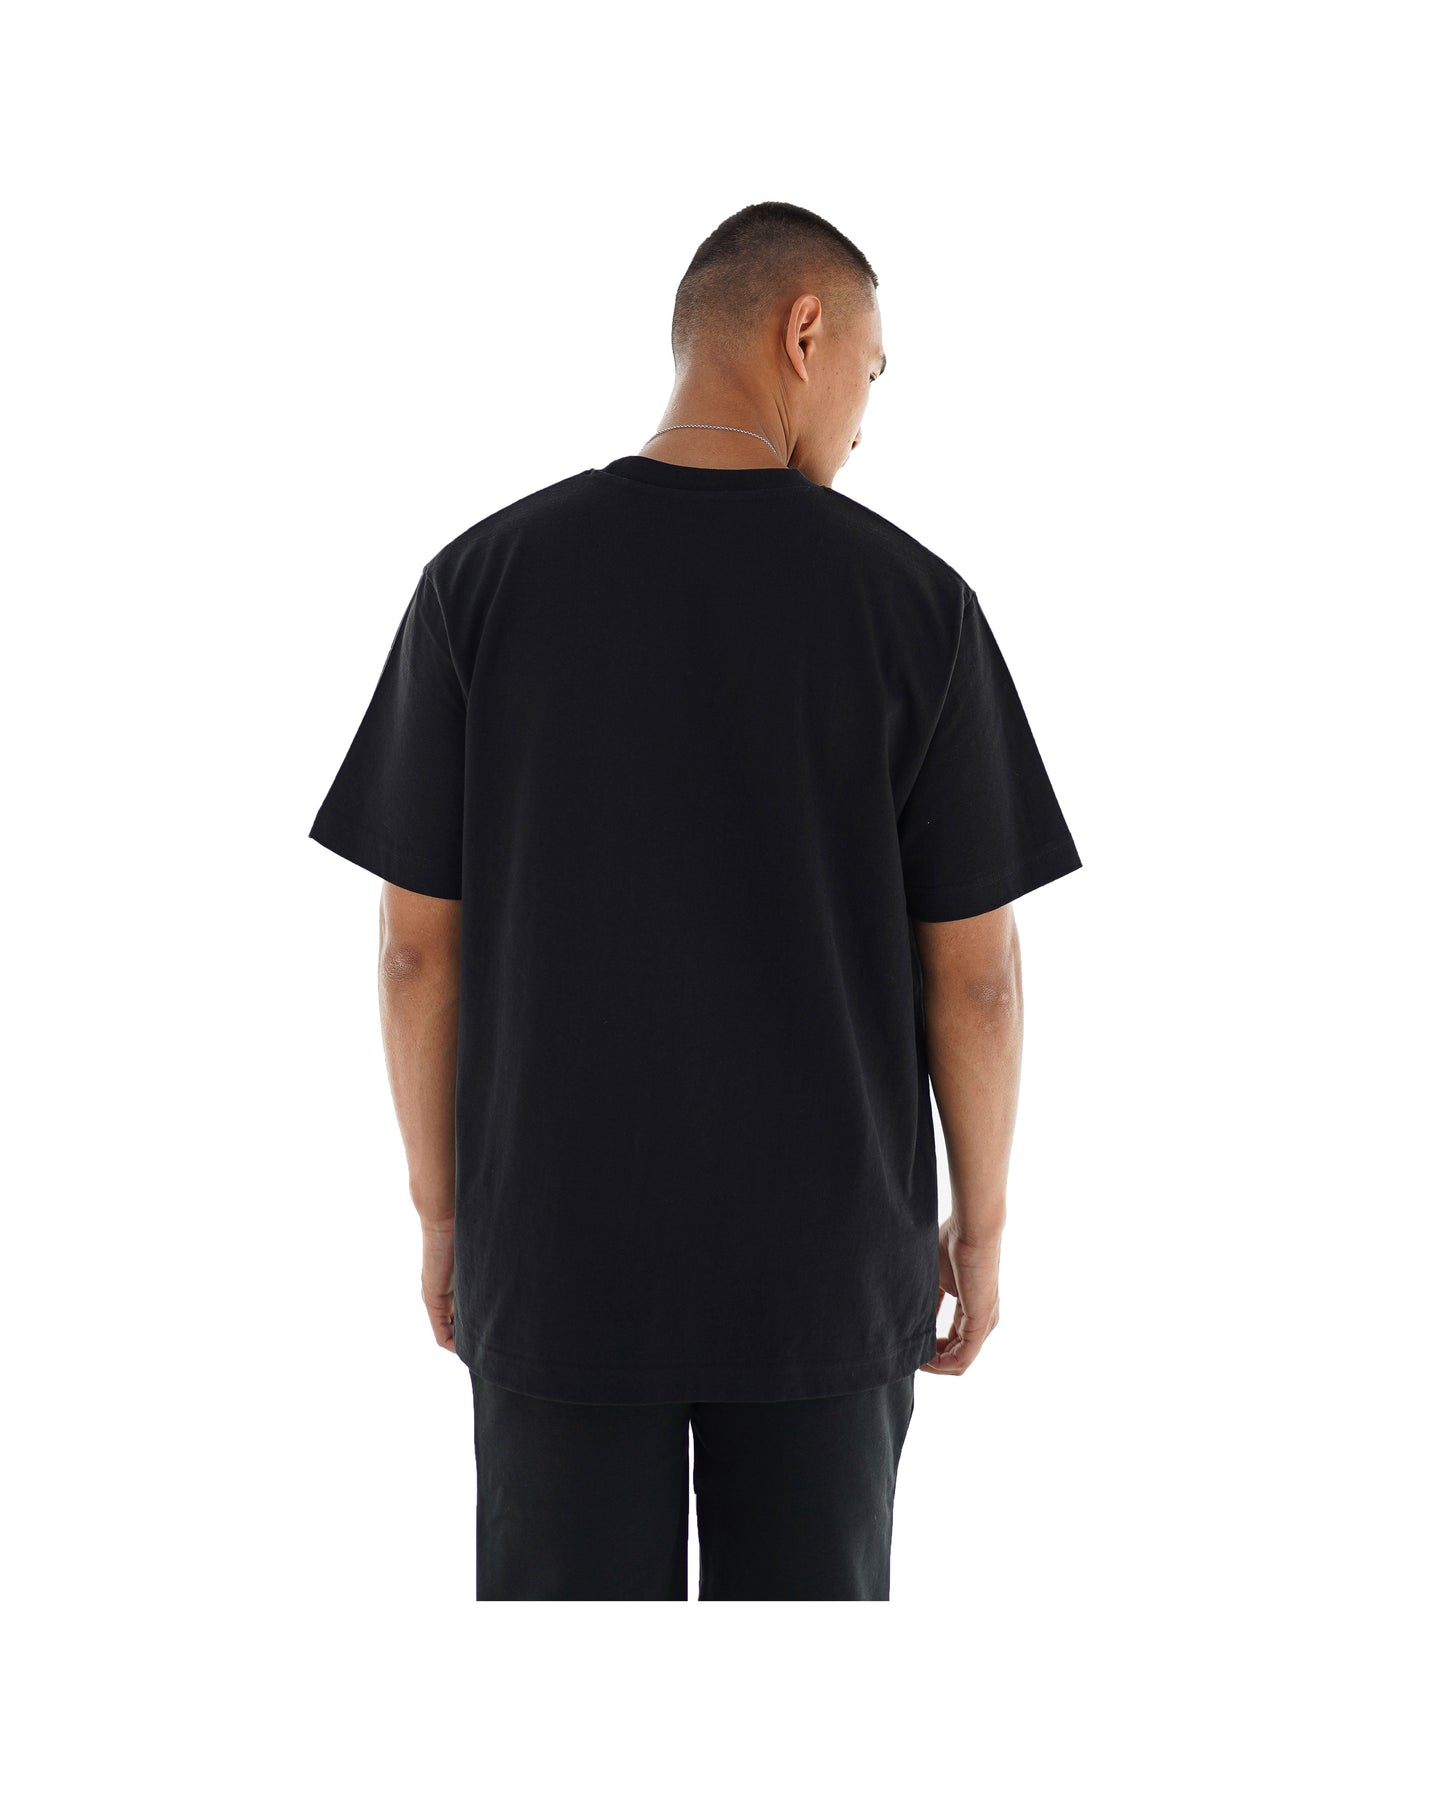 
                  
                    AL Contour T-Shirt - Black
                  
                